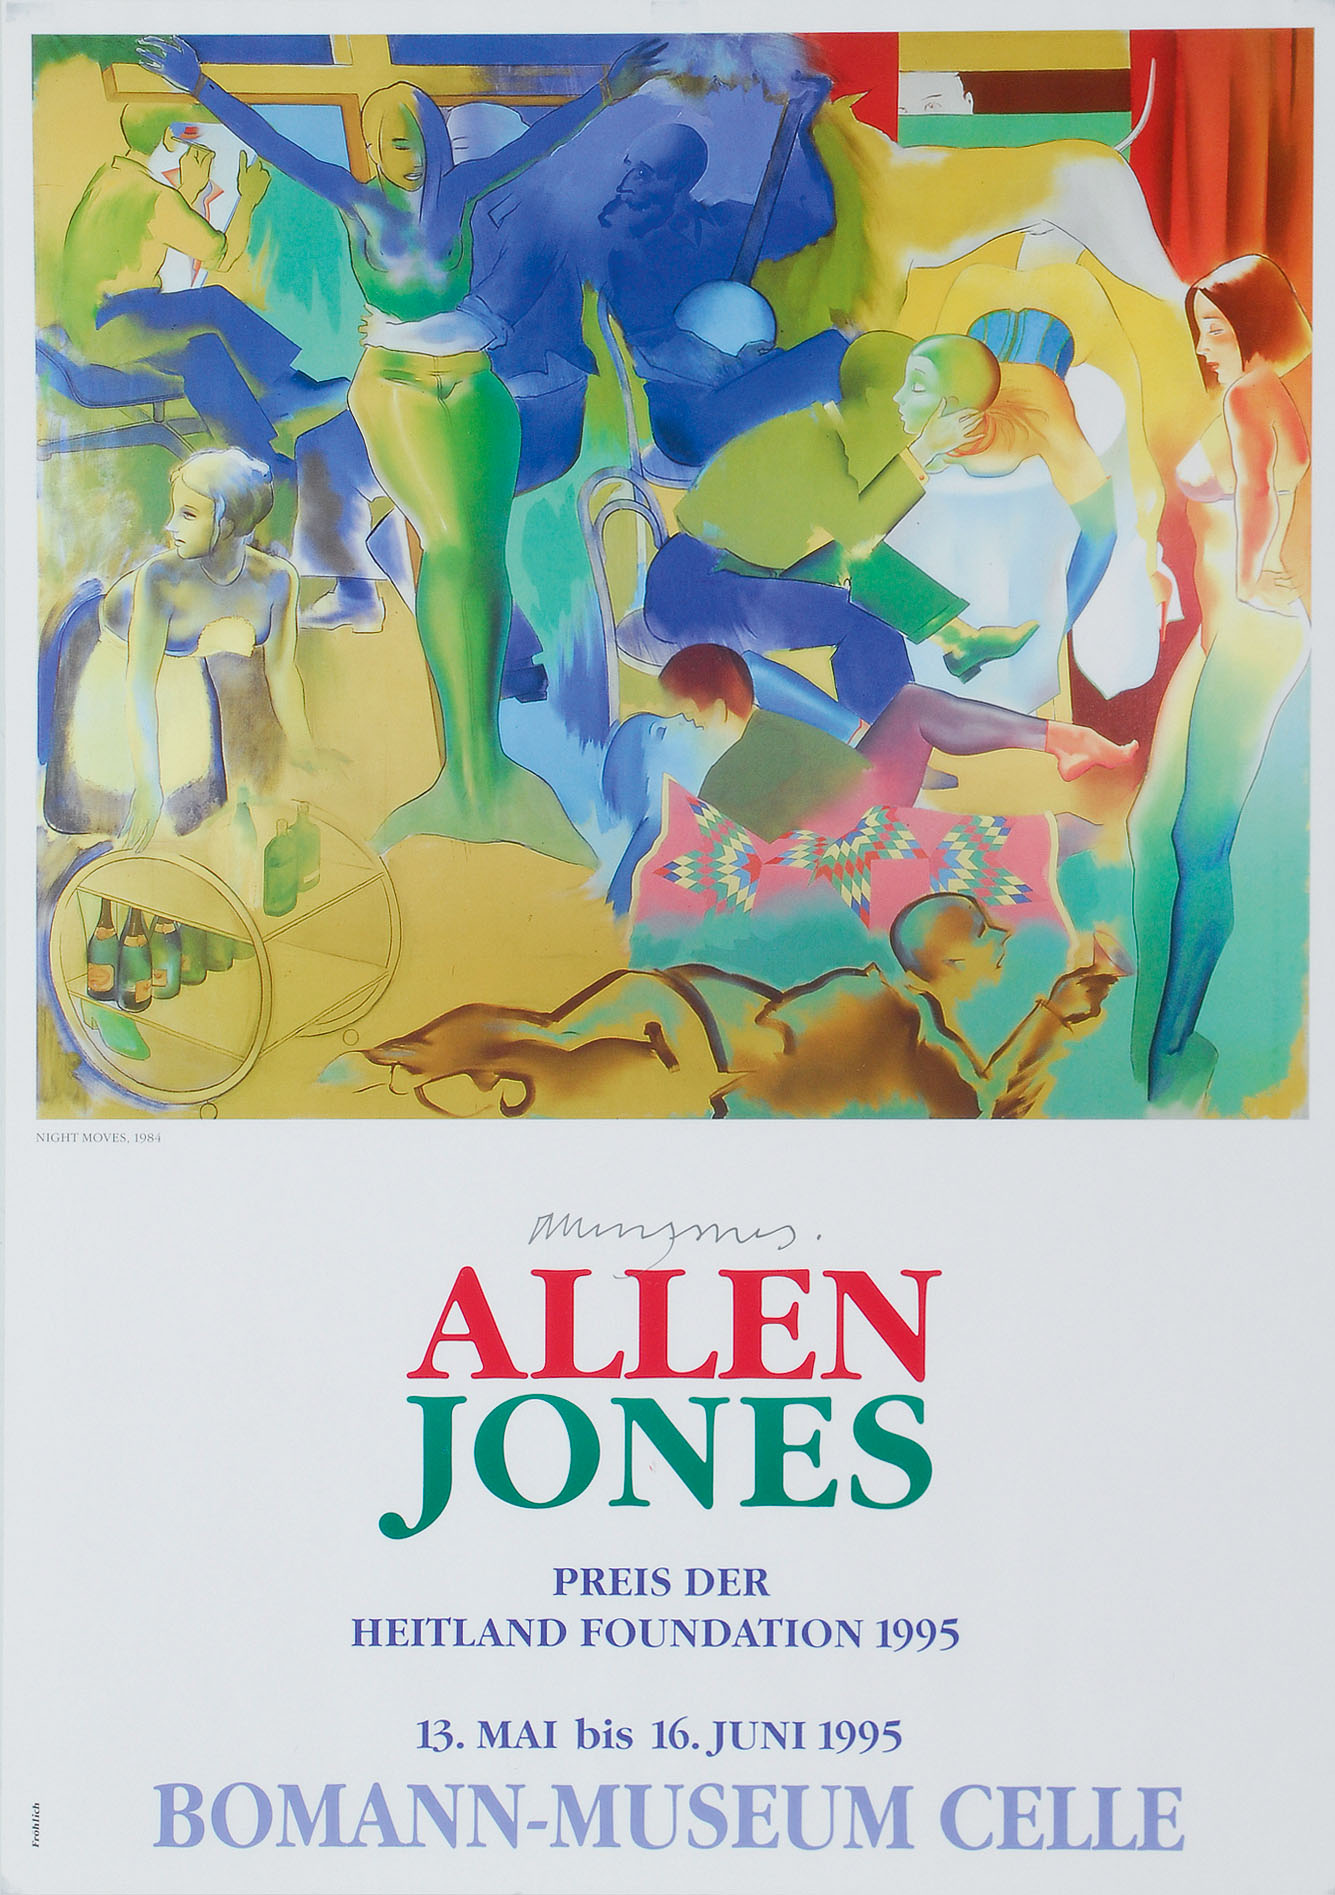 Handsigniertes Plakat: Allen Jones - Boman Museum Celle (1995)